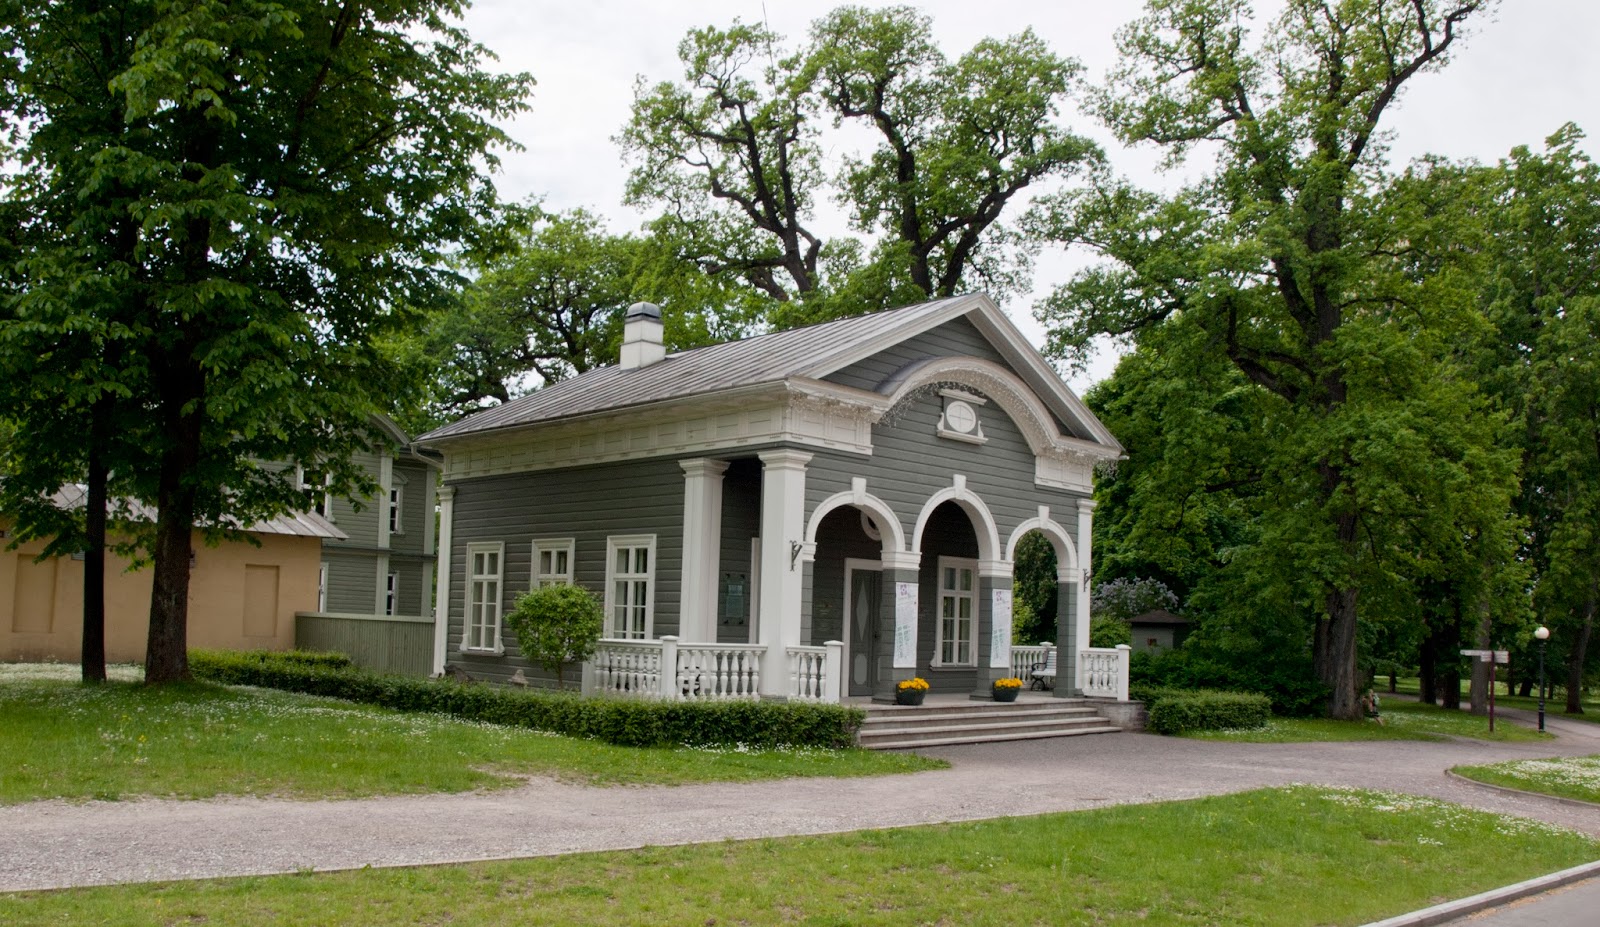 Дом-музей Петра I